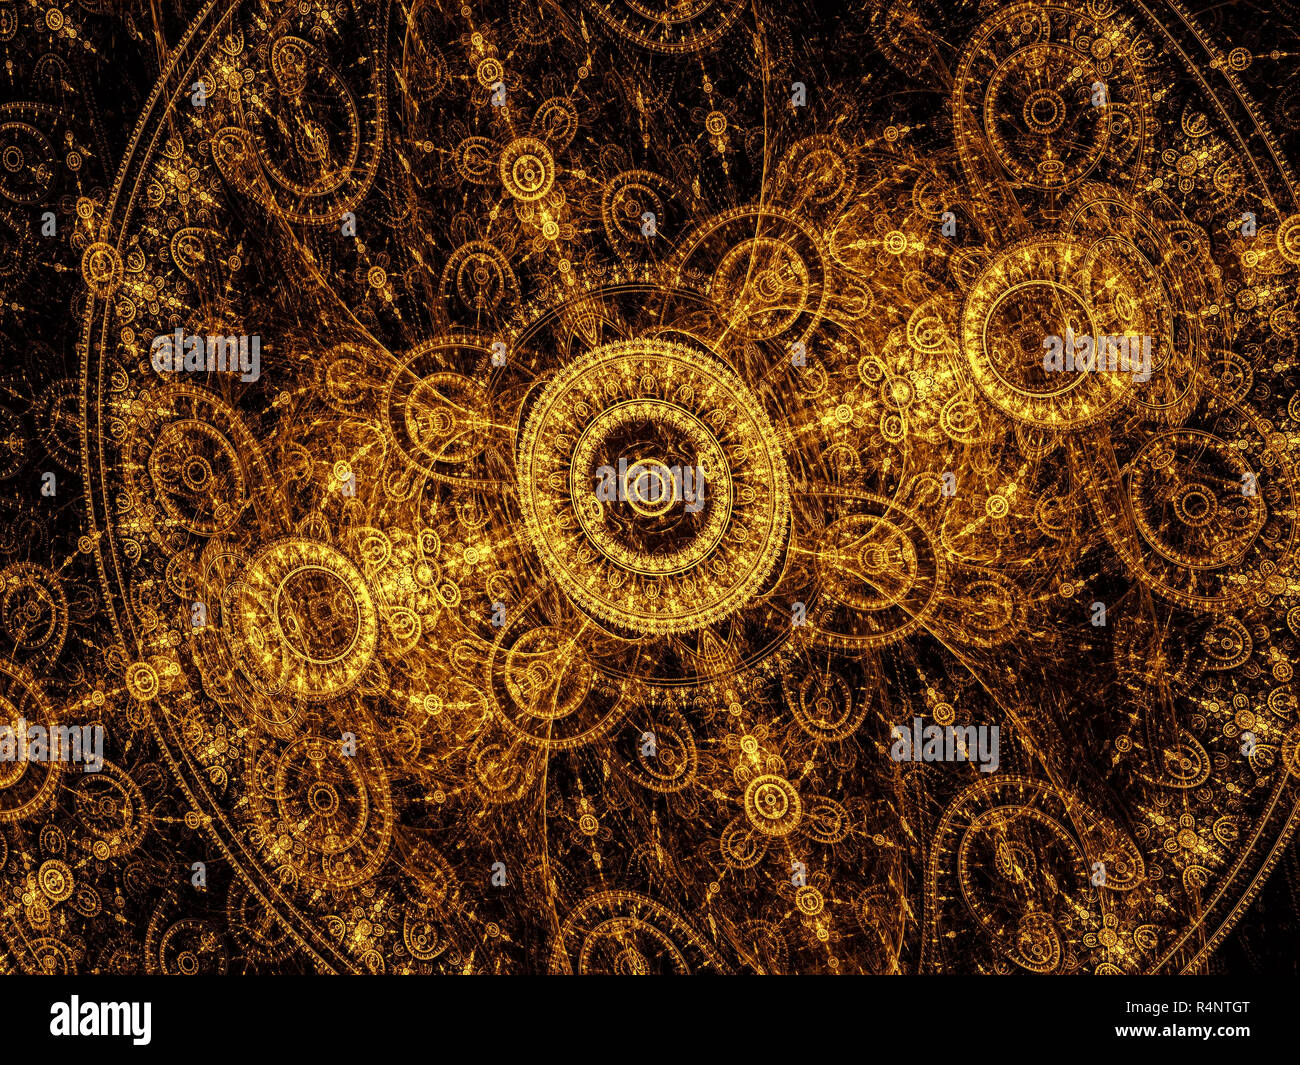 Résumé motif de cercles d'or et de courbes, comme un cadran translucide avec une horloge. - Art Fractal image générée par ordinateur. Mystique, ou de la technologie Banque D'Images